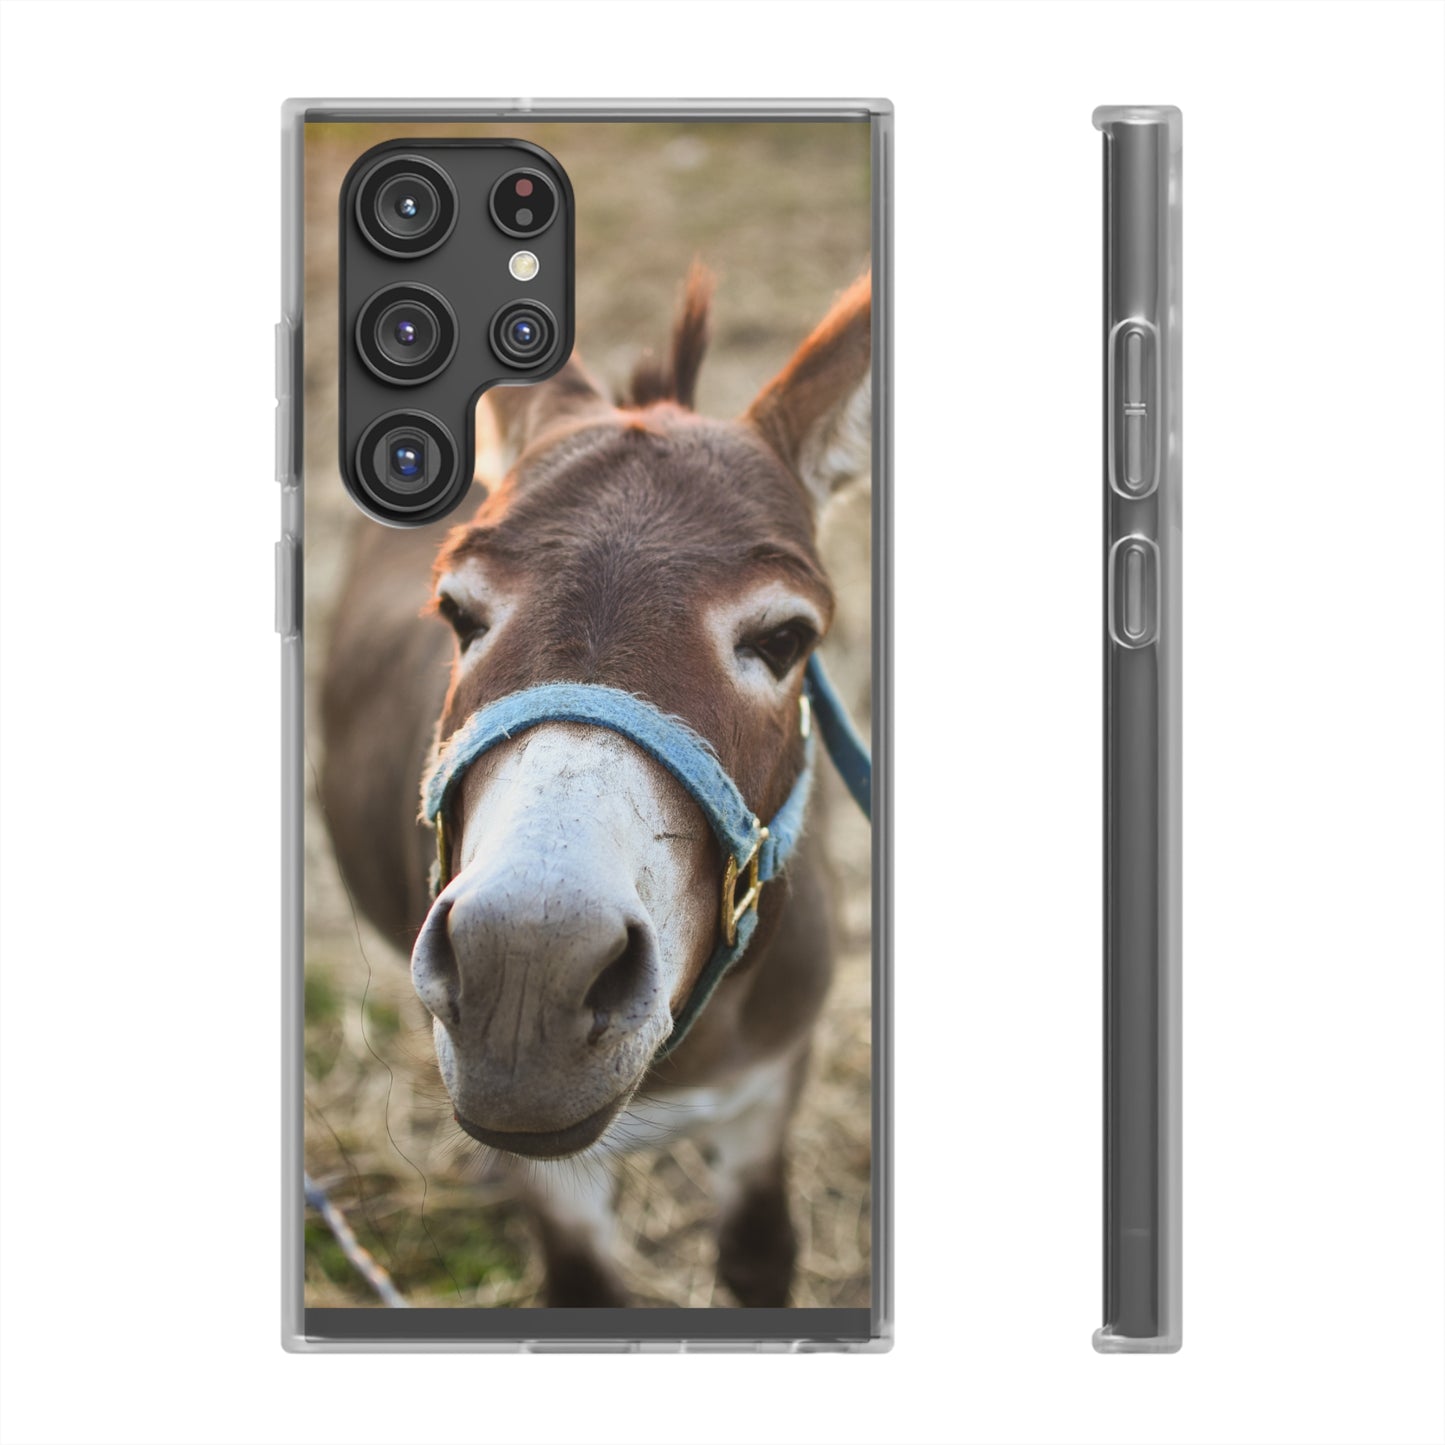 Cute Donkey Phone Case